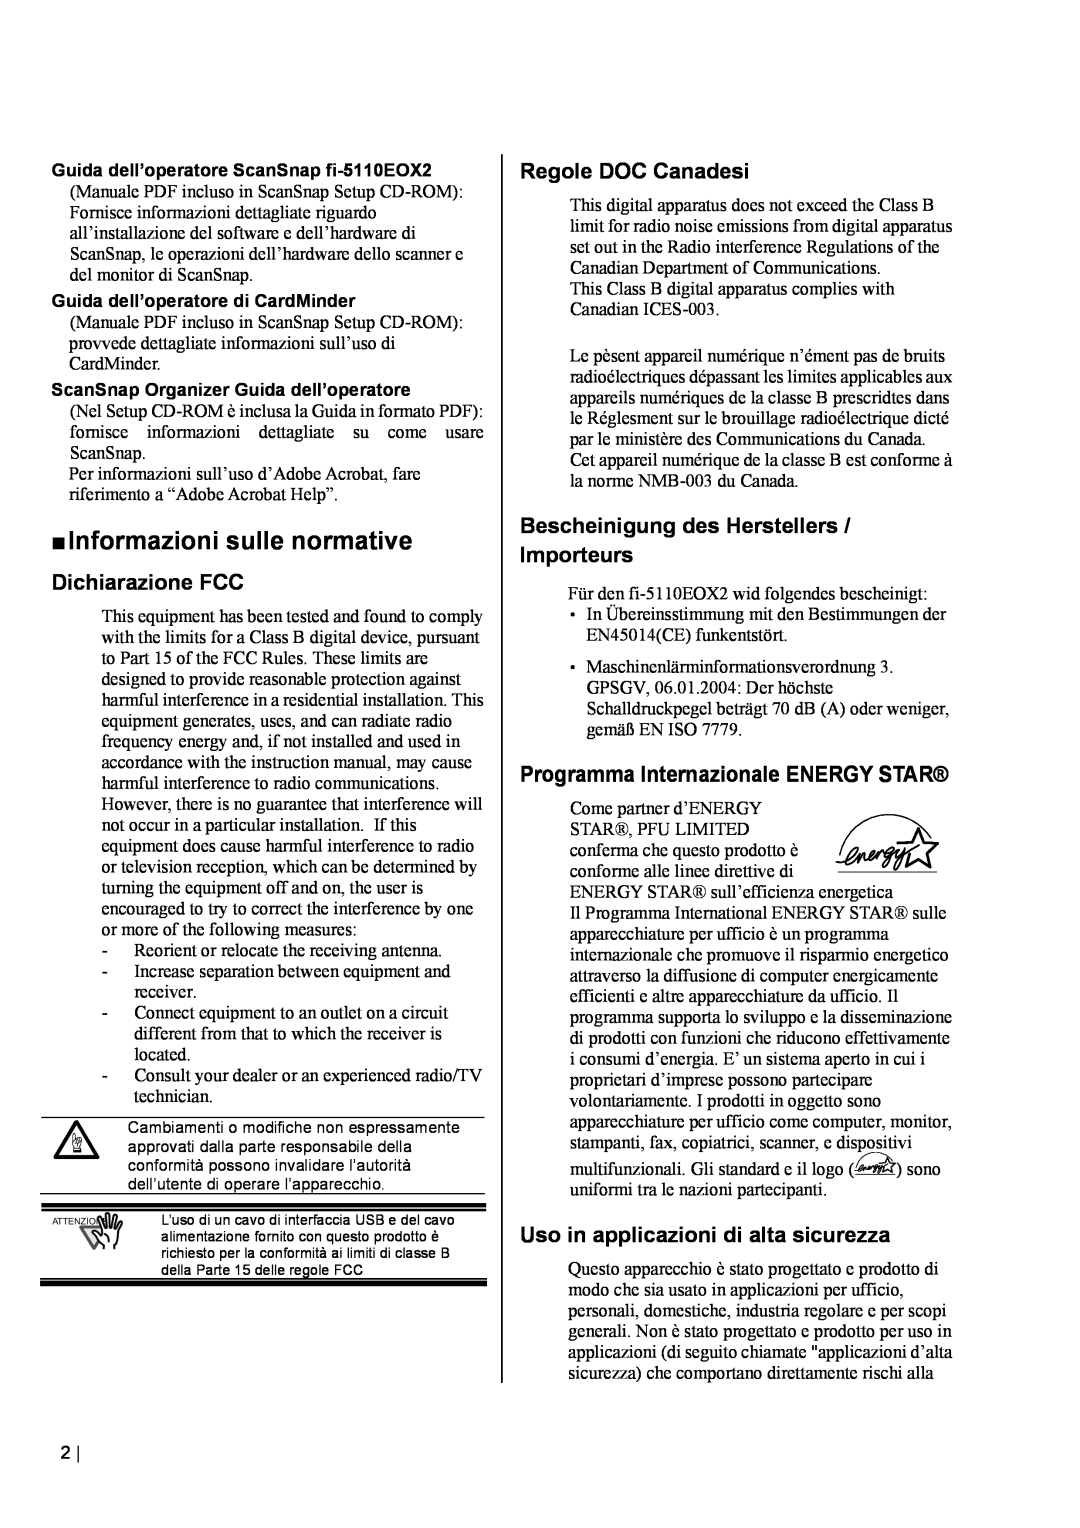 Fujitsu fi-5110EOX2 manual „ Informazioni sulle normative, Dichiarazione FCC, Regole DOC Canadesi 